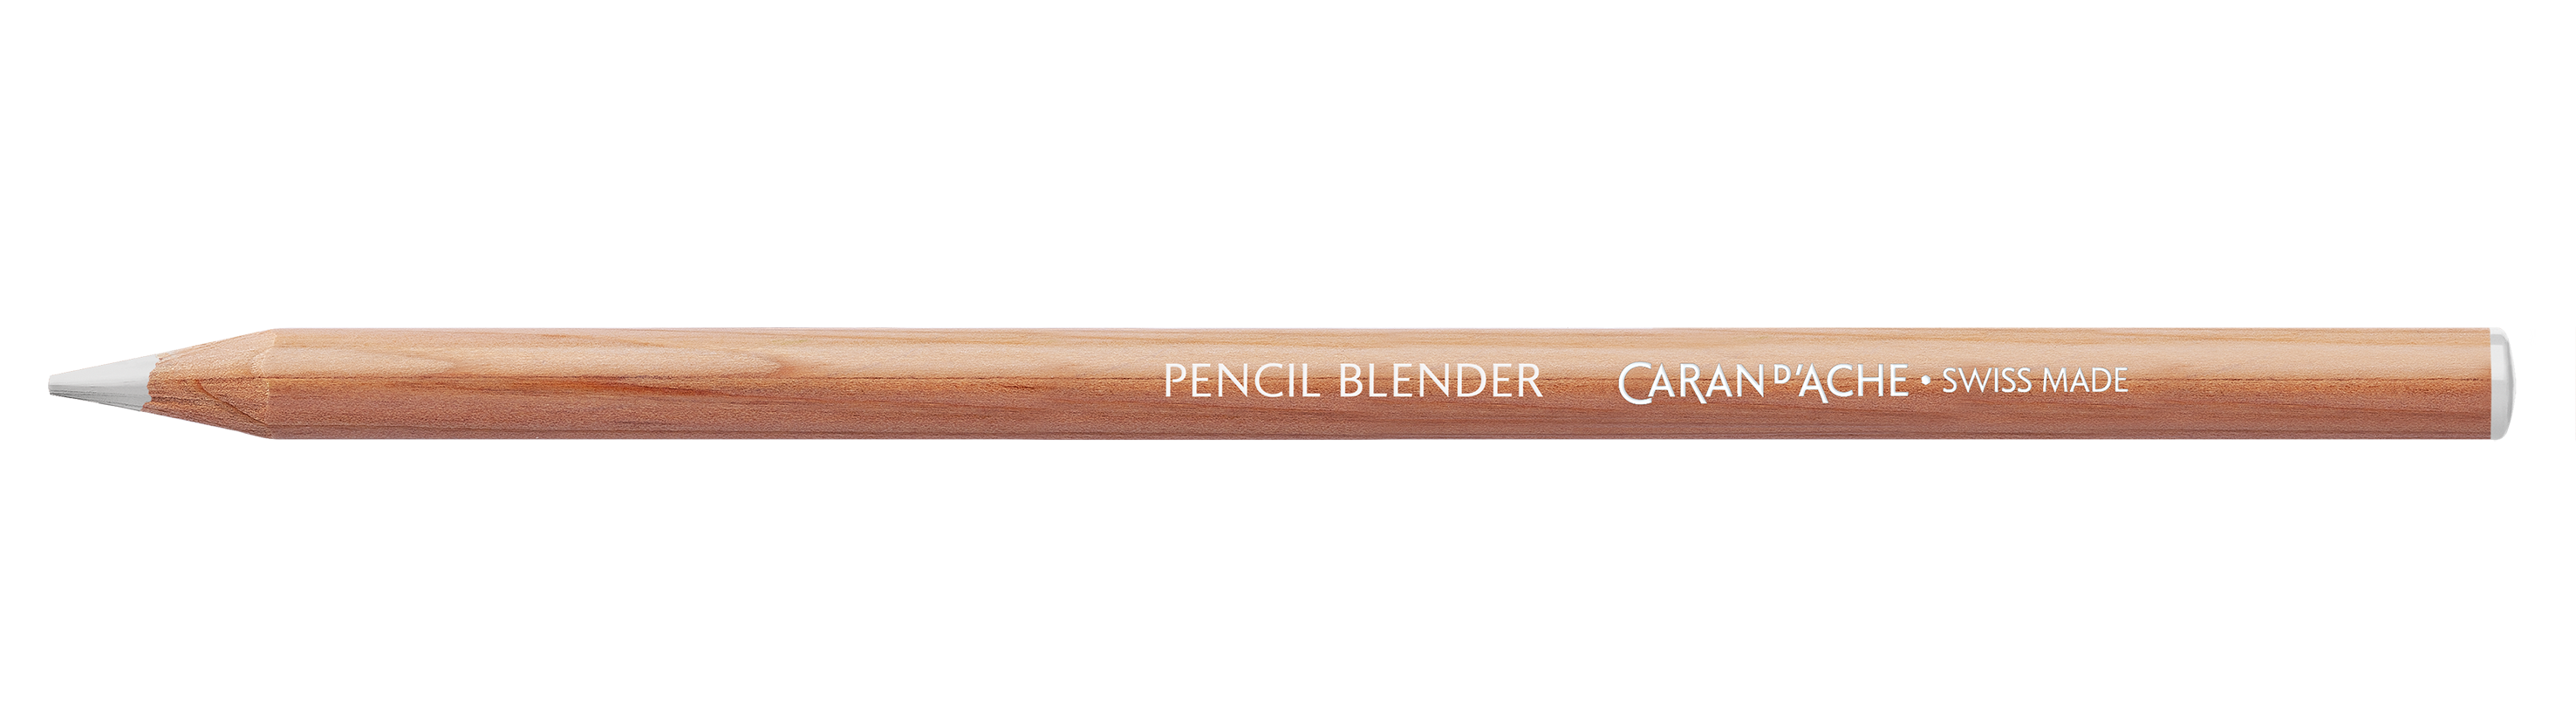 Caran d'Ache Luminance Pencil Colorless Blender